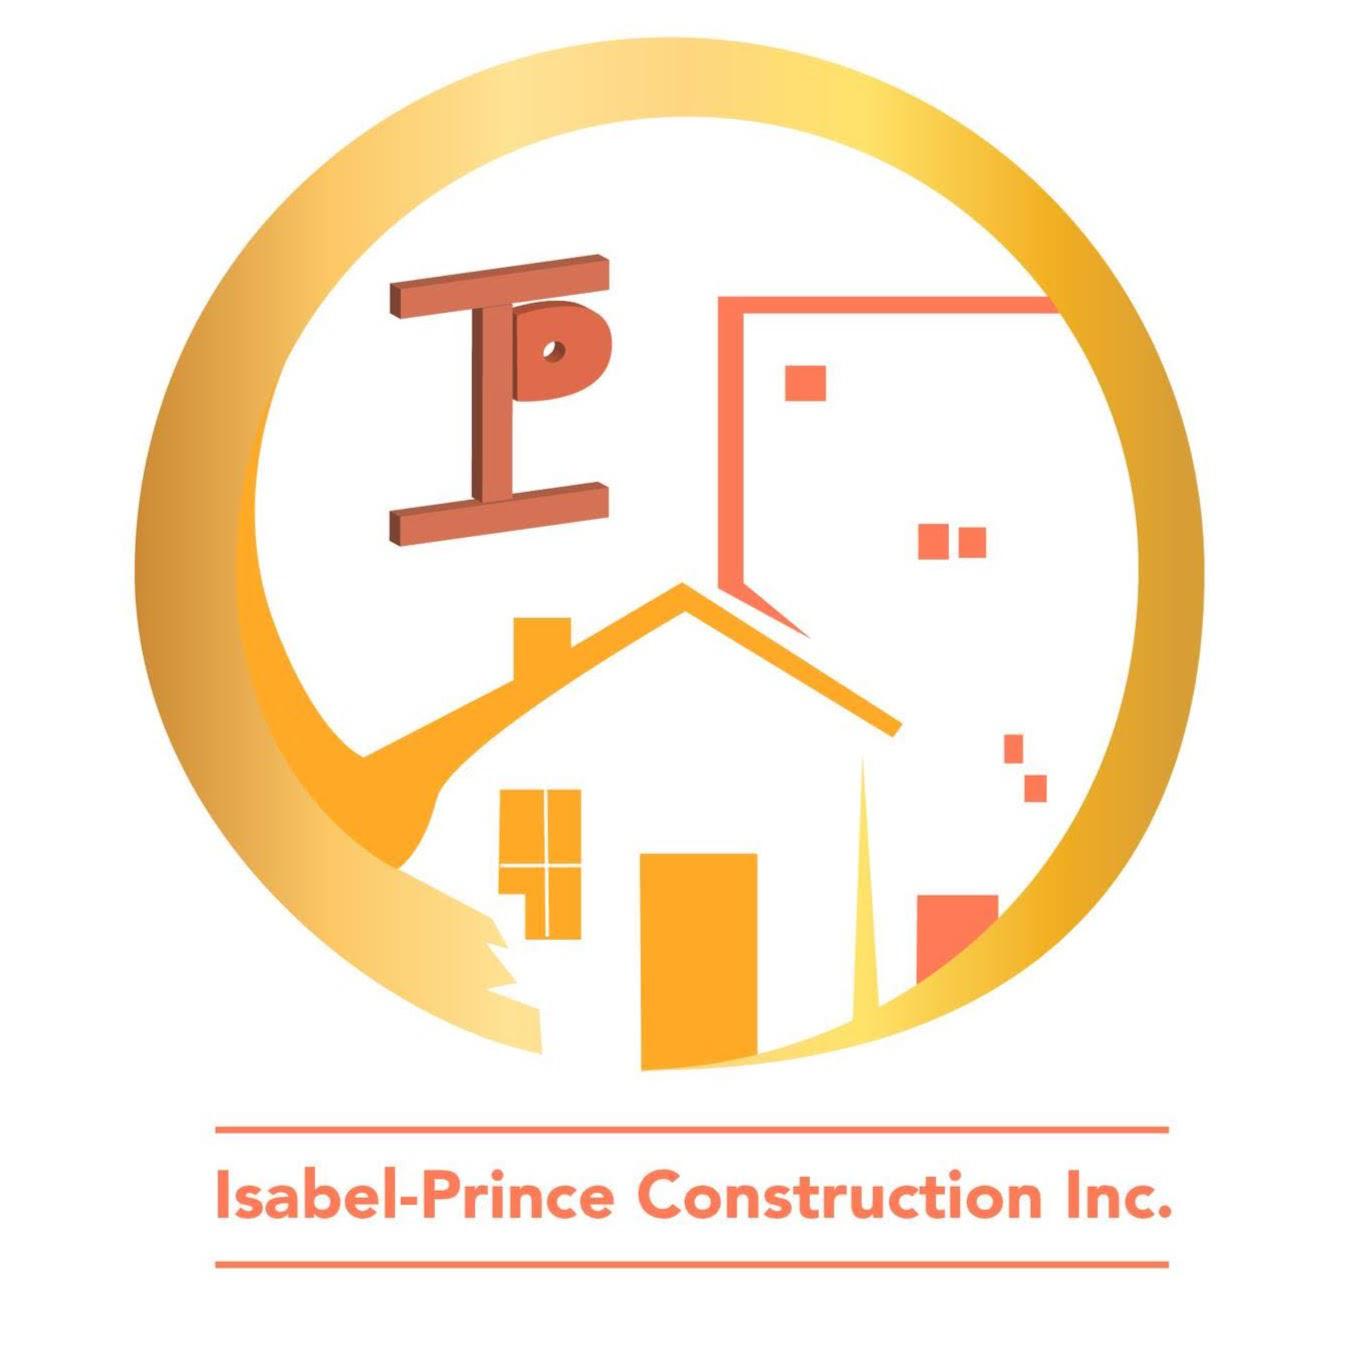 Isabel-Prince Construction Inc. - Rénovation Salle de bain - Saint-Eustache Montréal